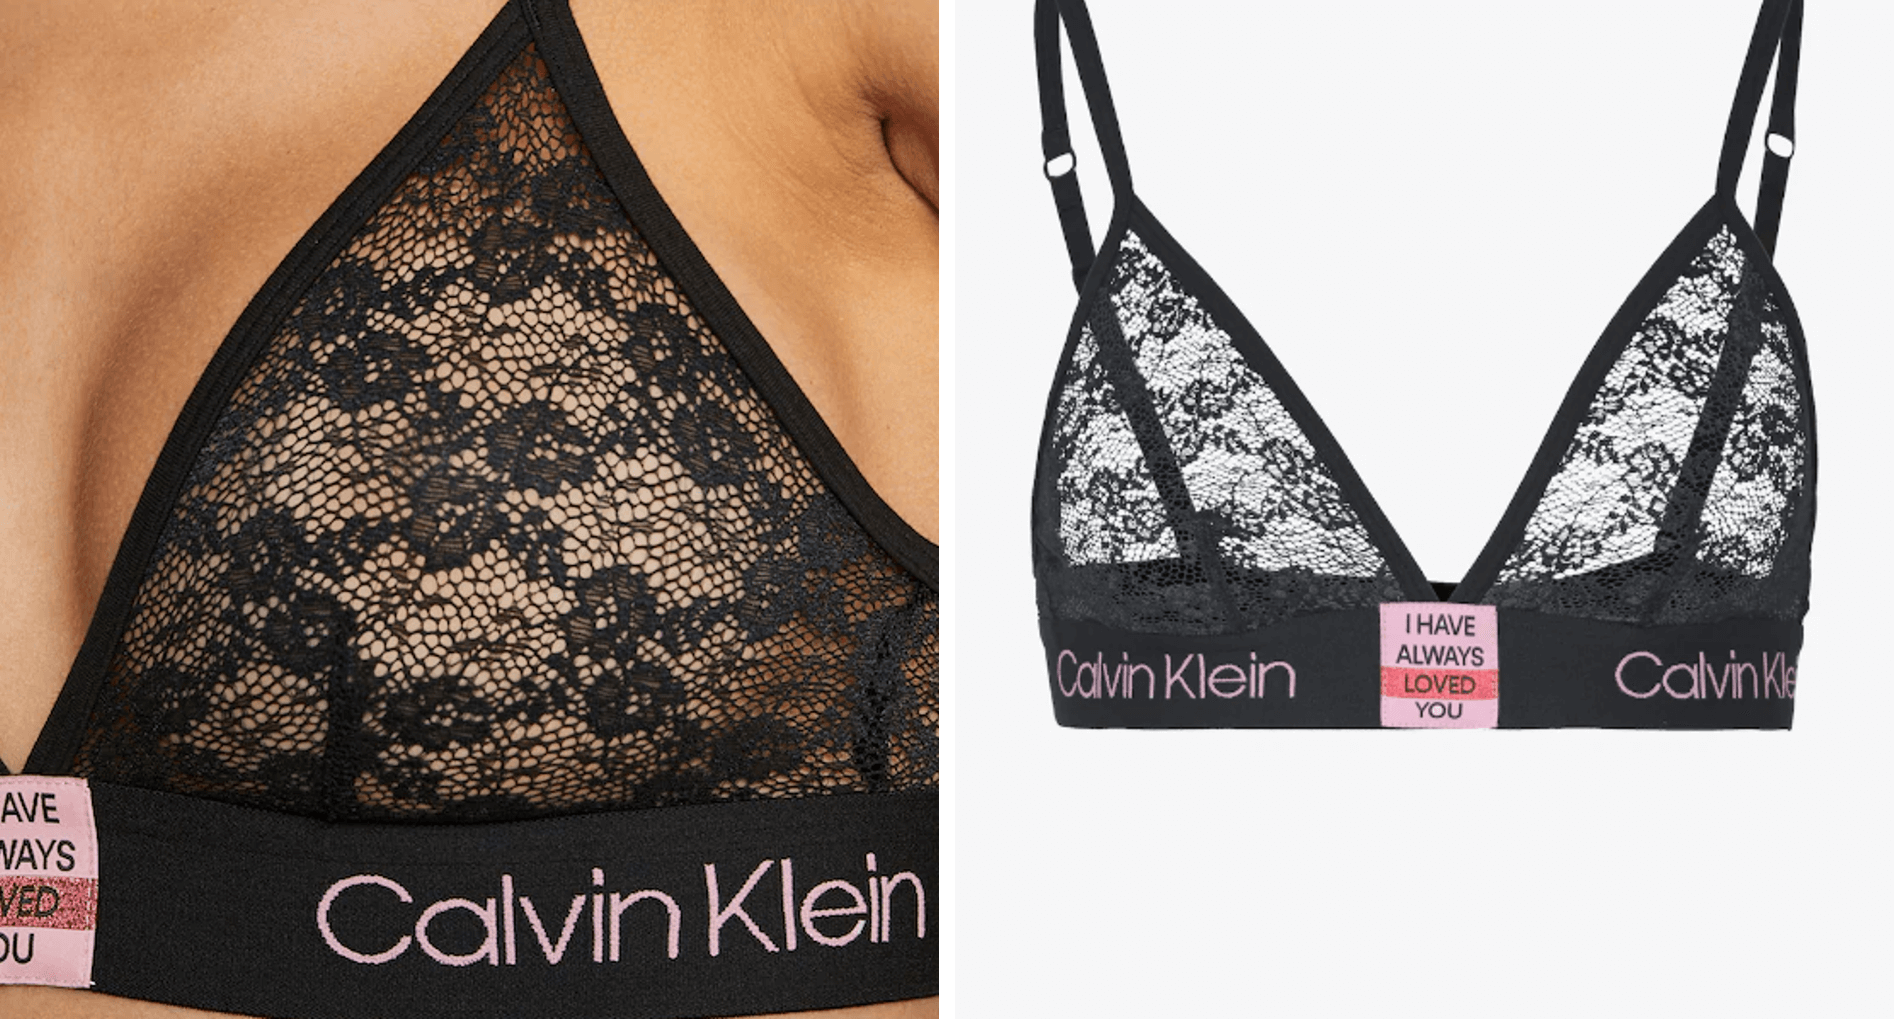 Why is Calvin Klein underwear so popular? - Quora